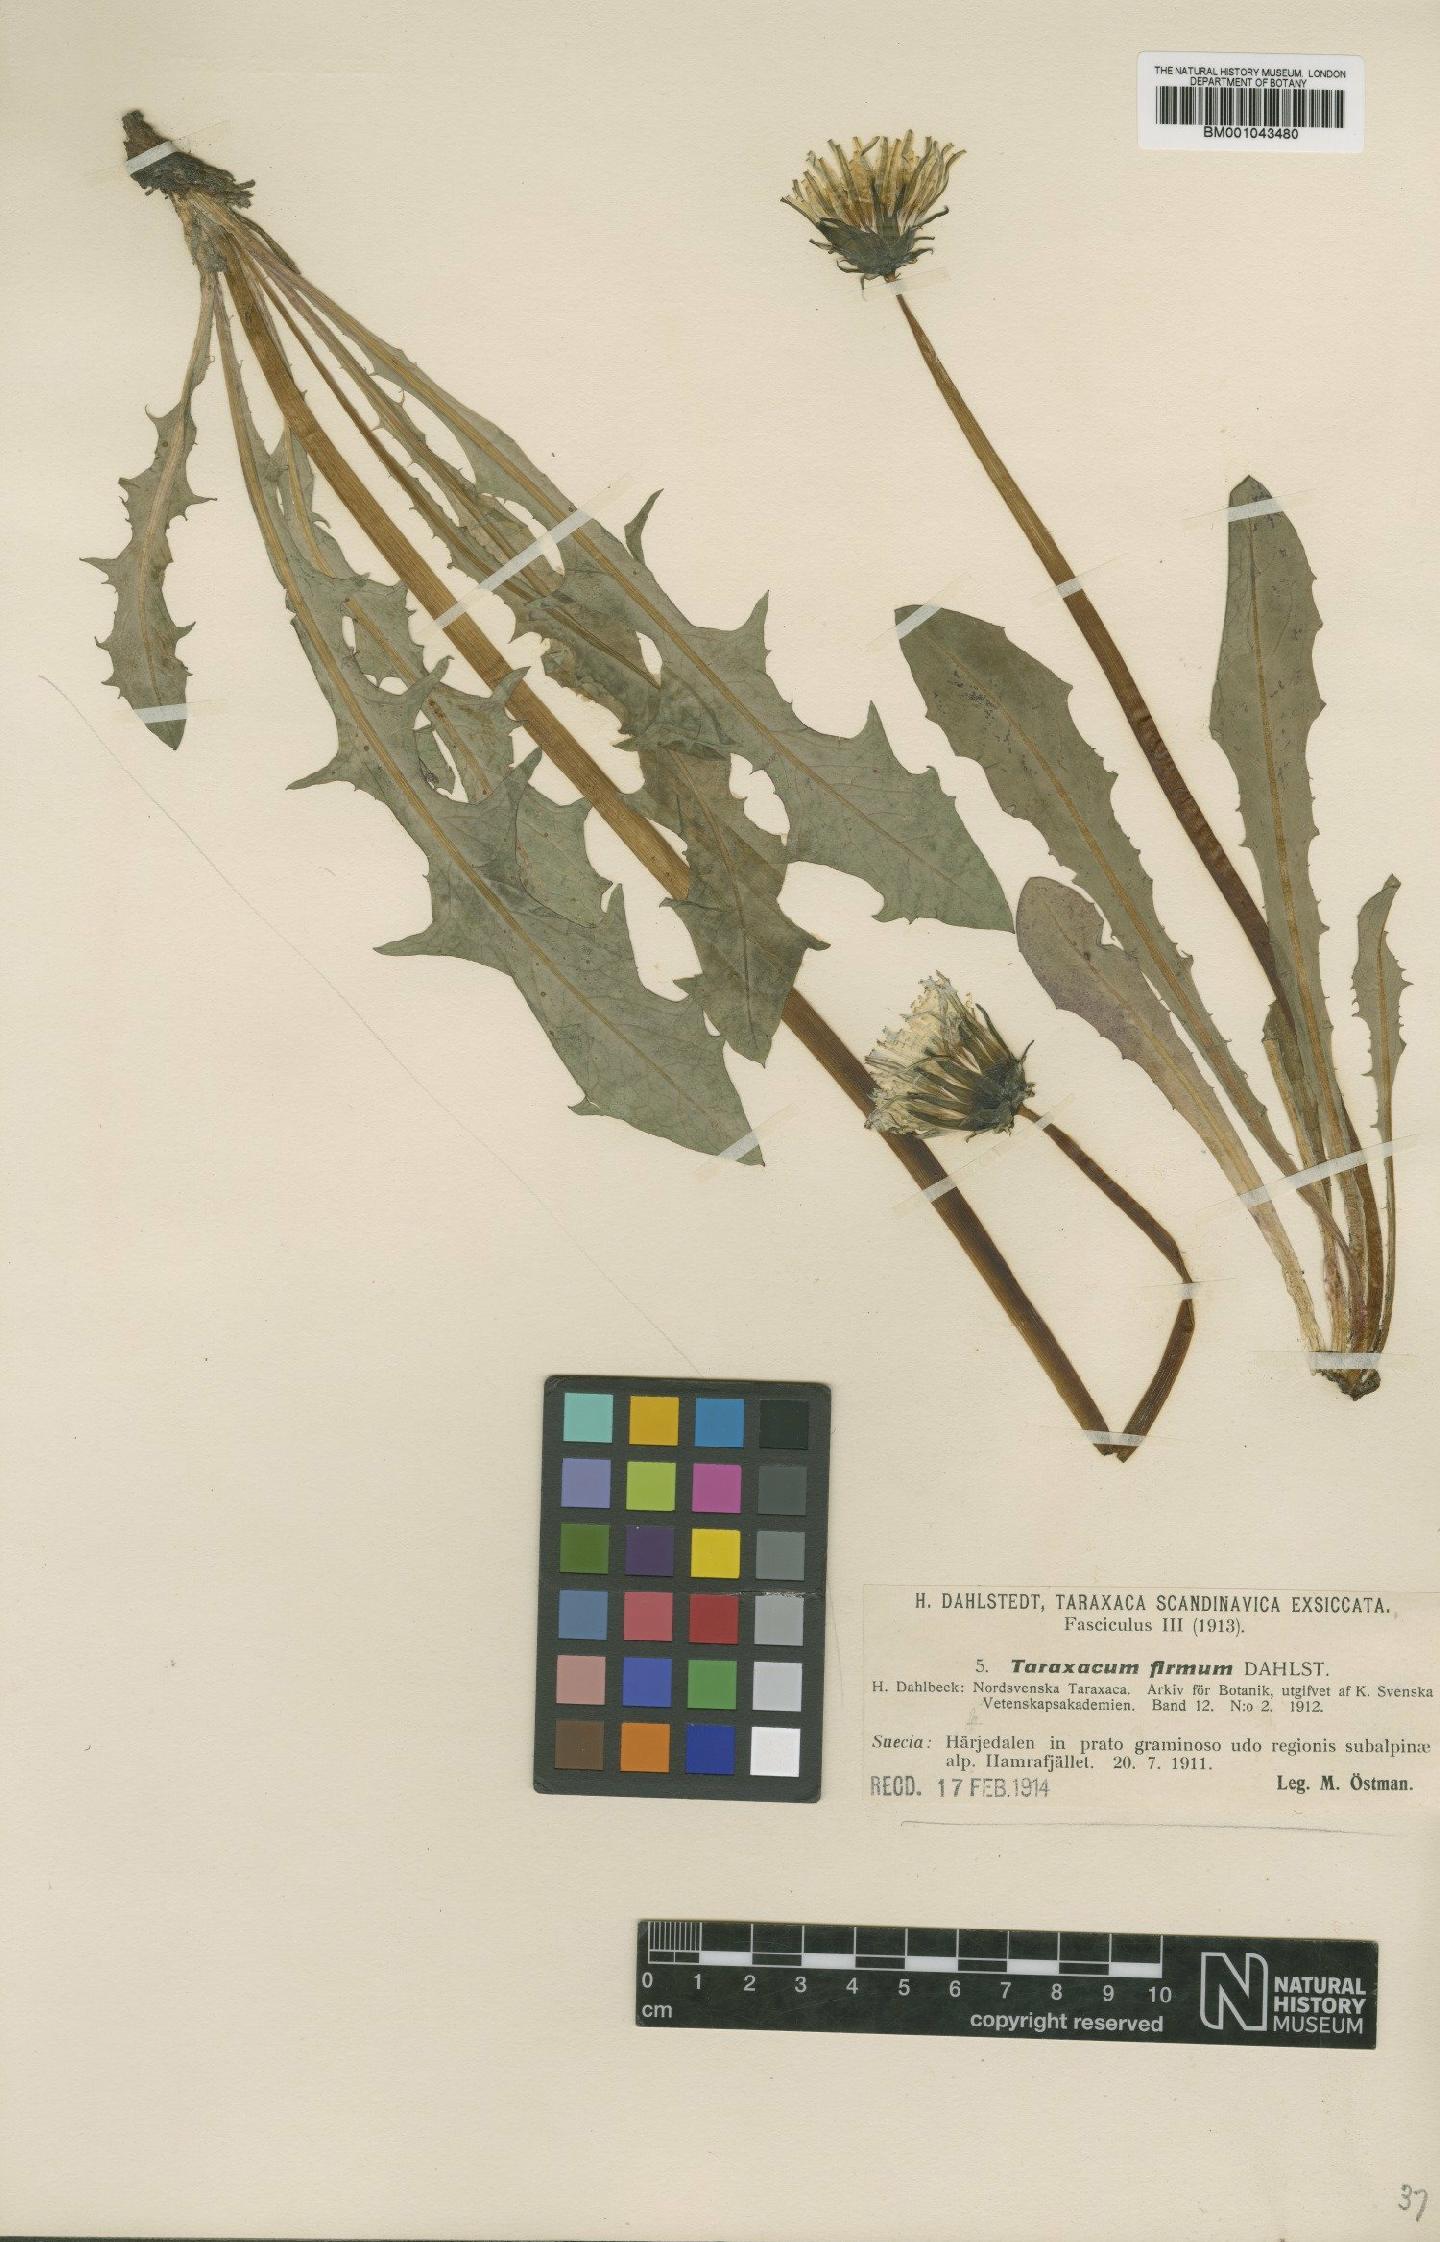 To NHMUK collection (Taraxacum firmum Dahlst.; Type; NHMUK:ecatalogue:1998599)